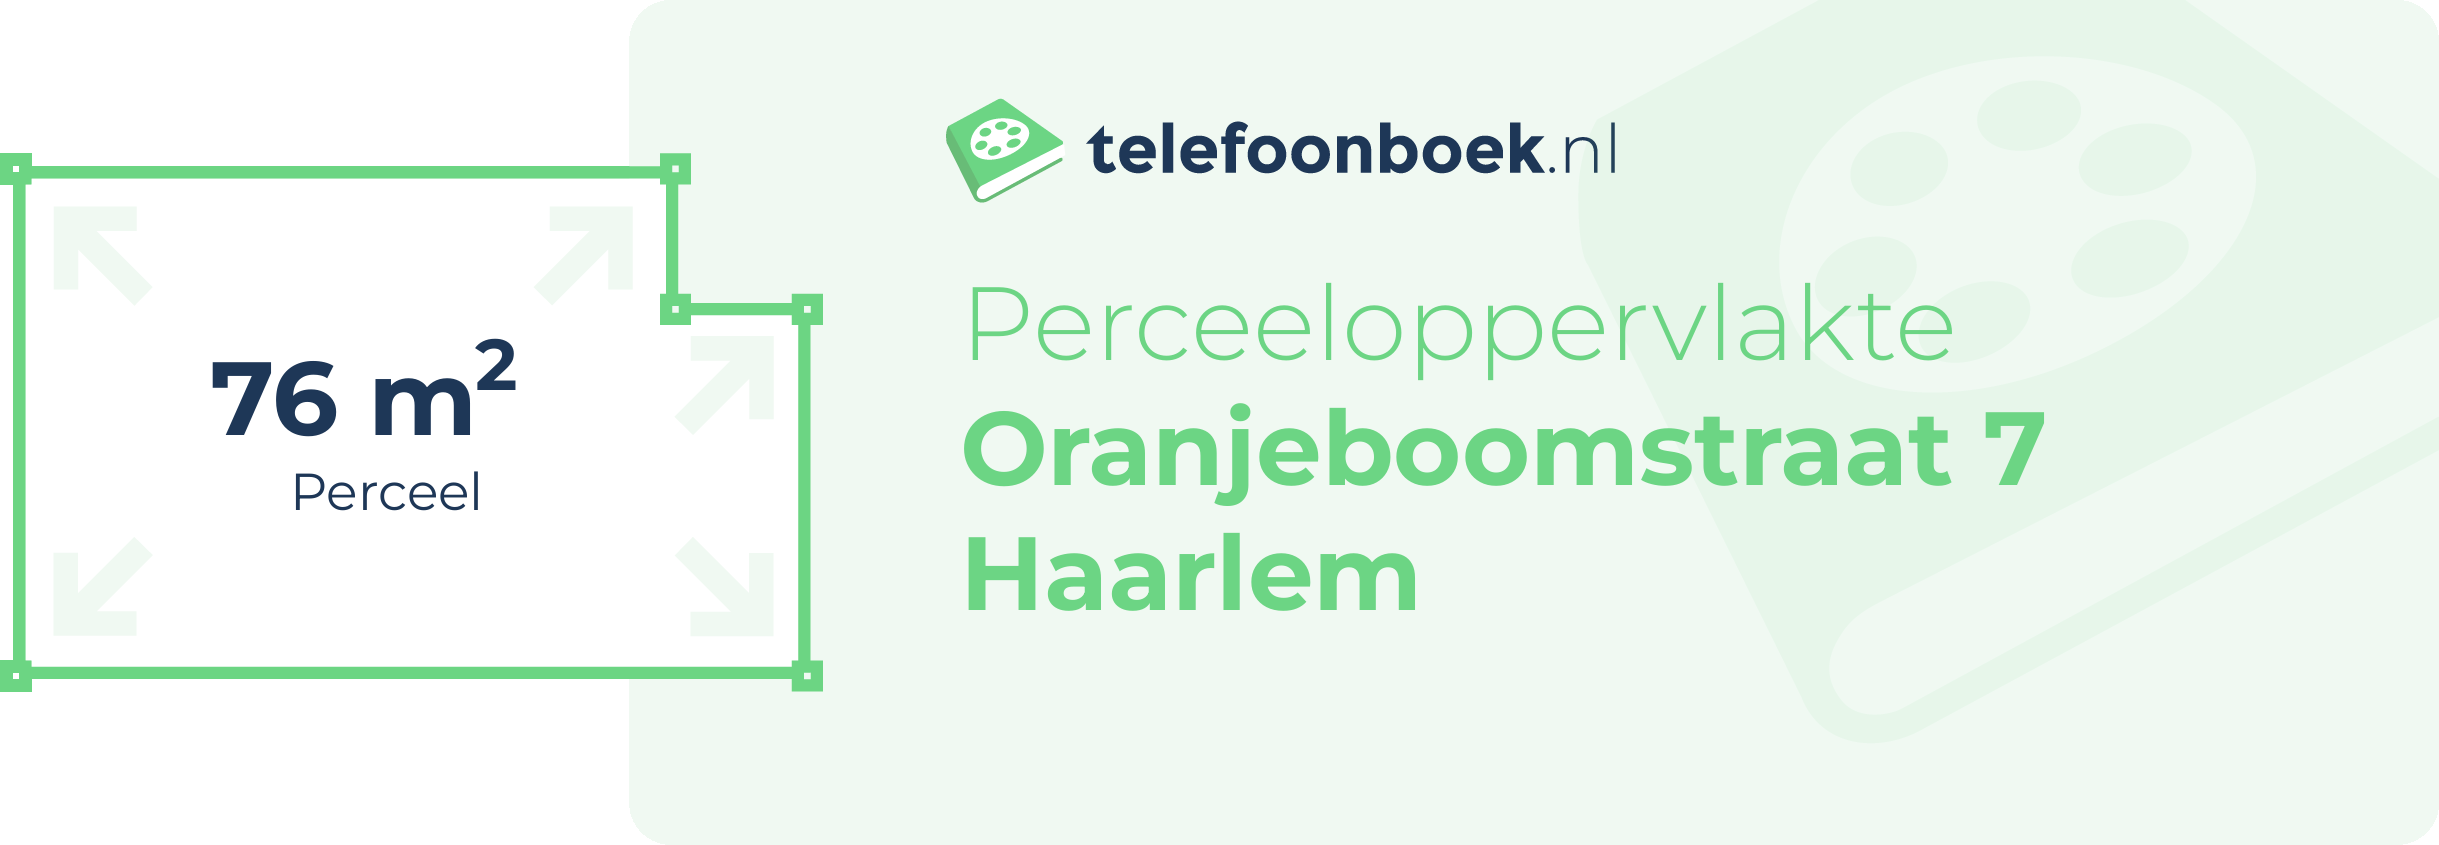 Perceeloppervlakte Oranjeboomstraat 7 Haarlem